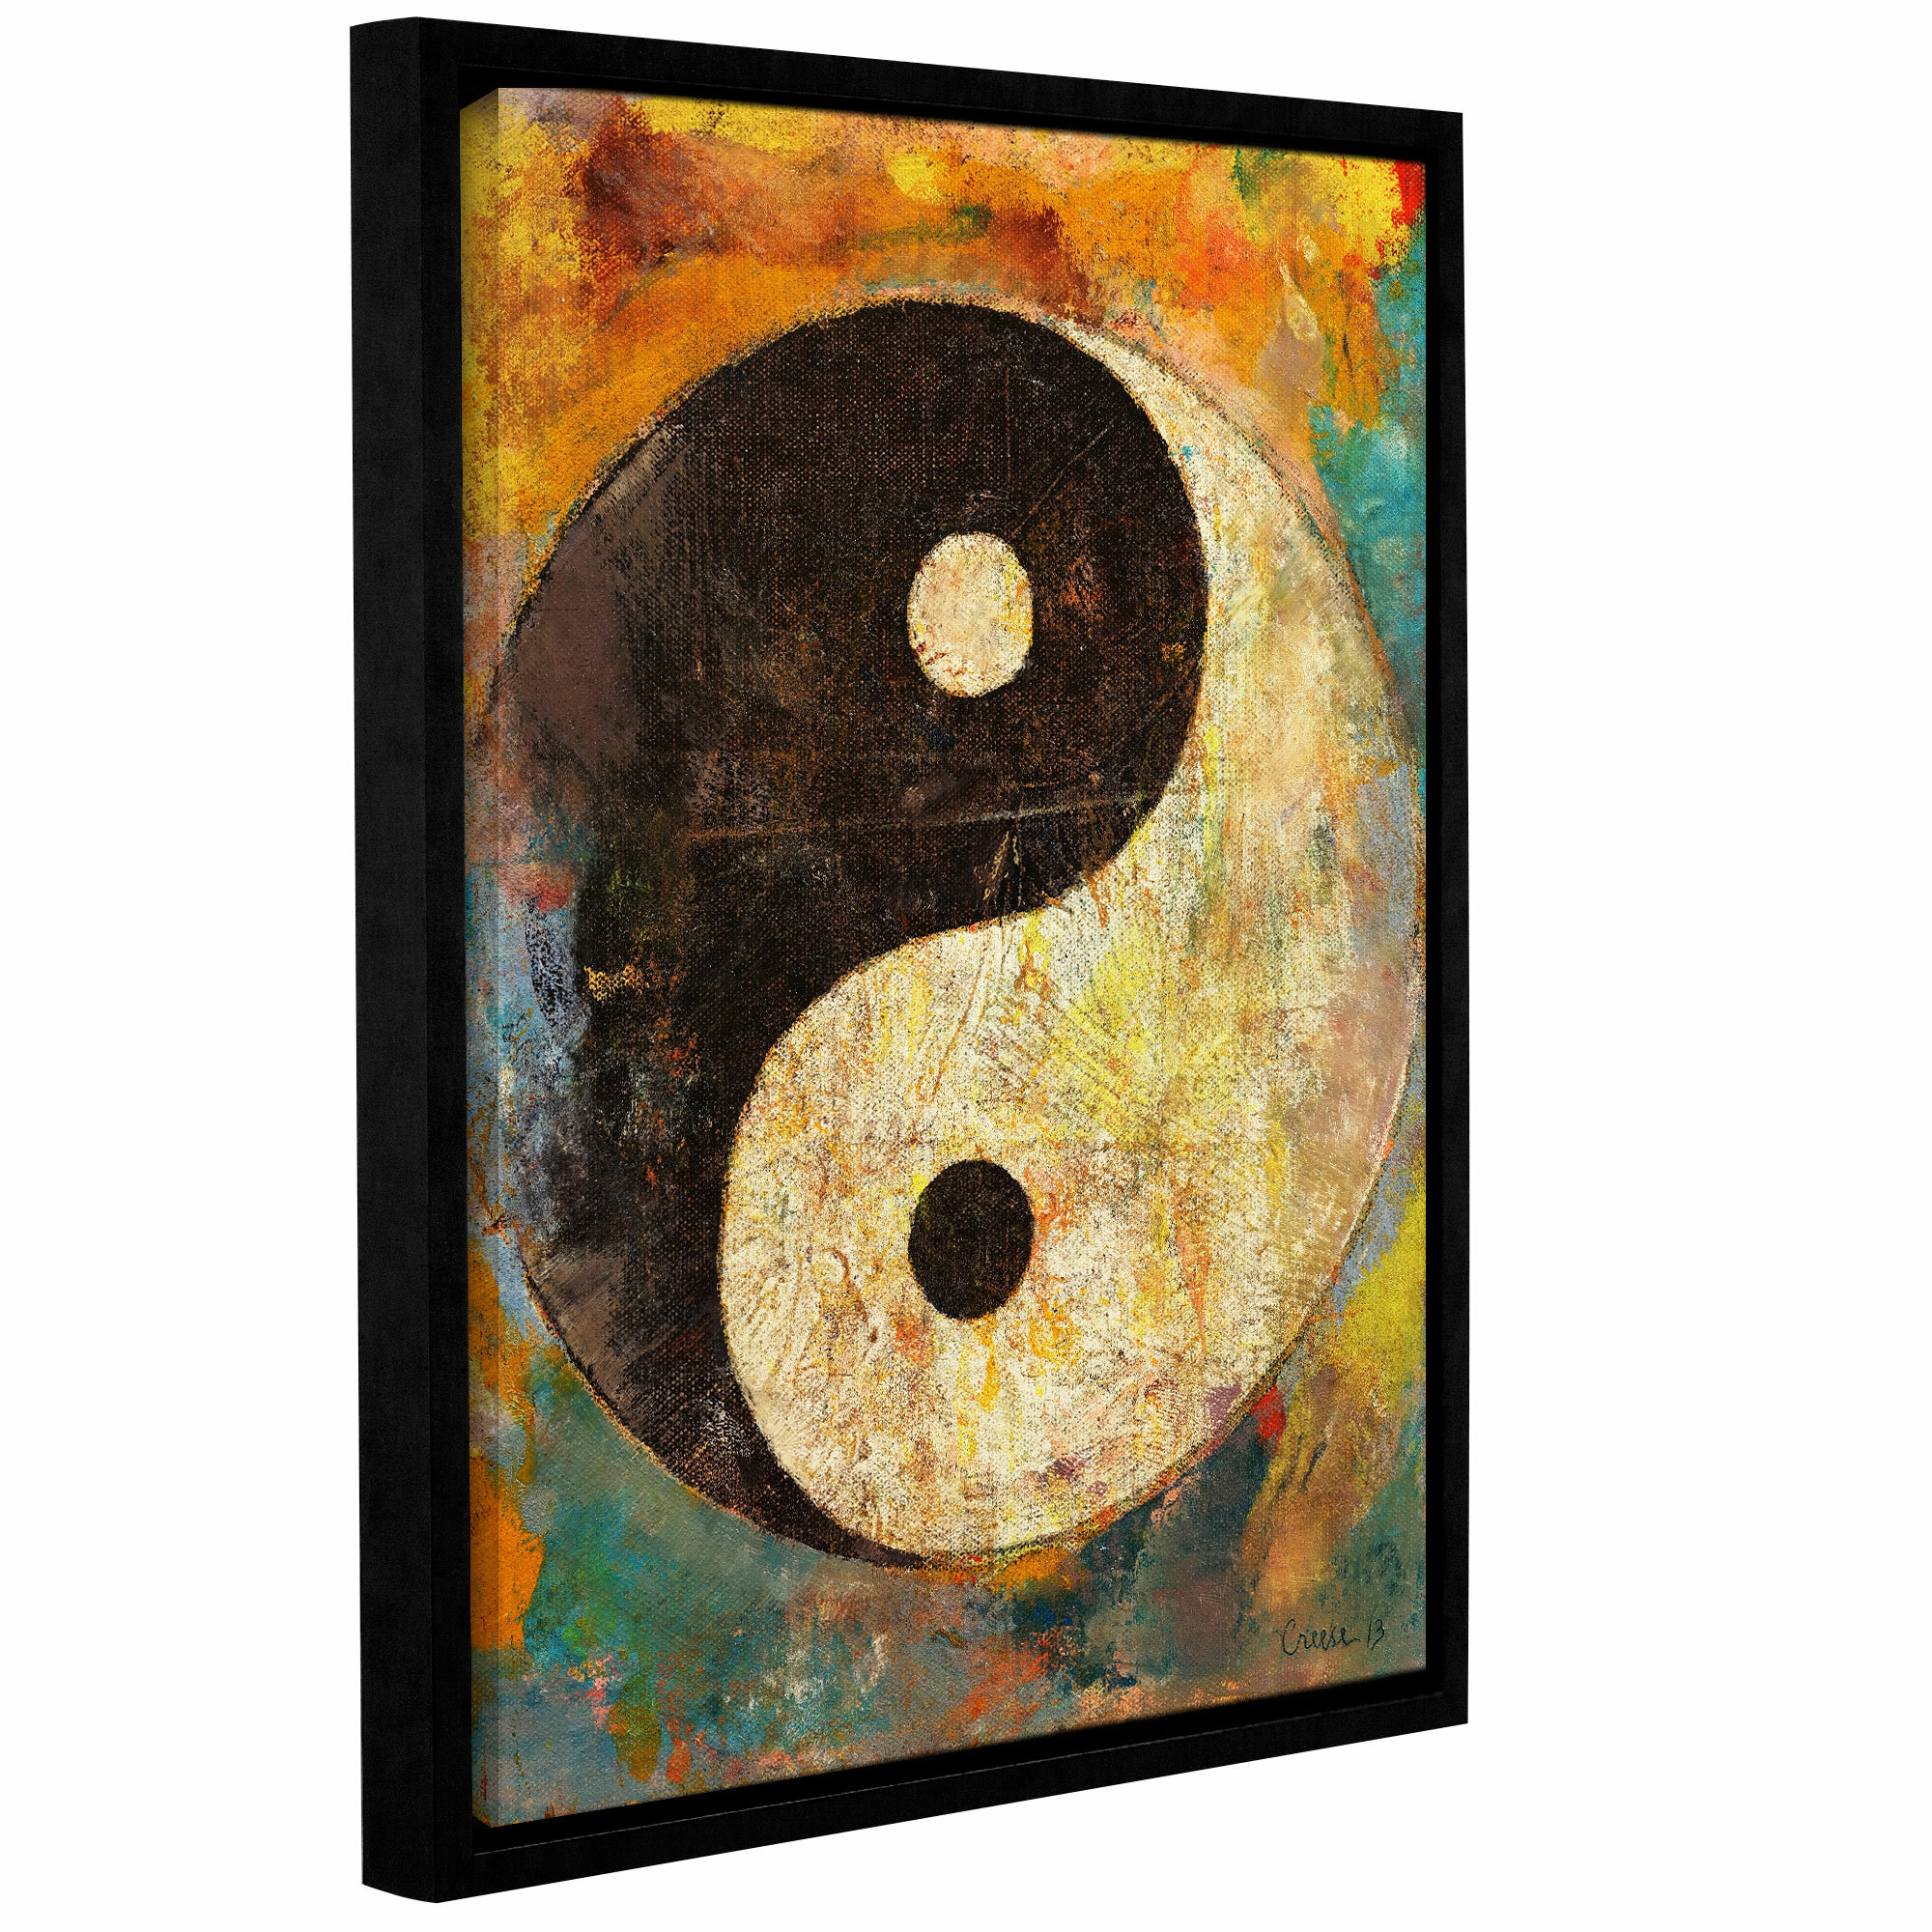 yin yang art abstract